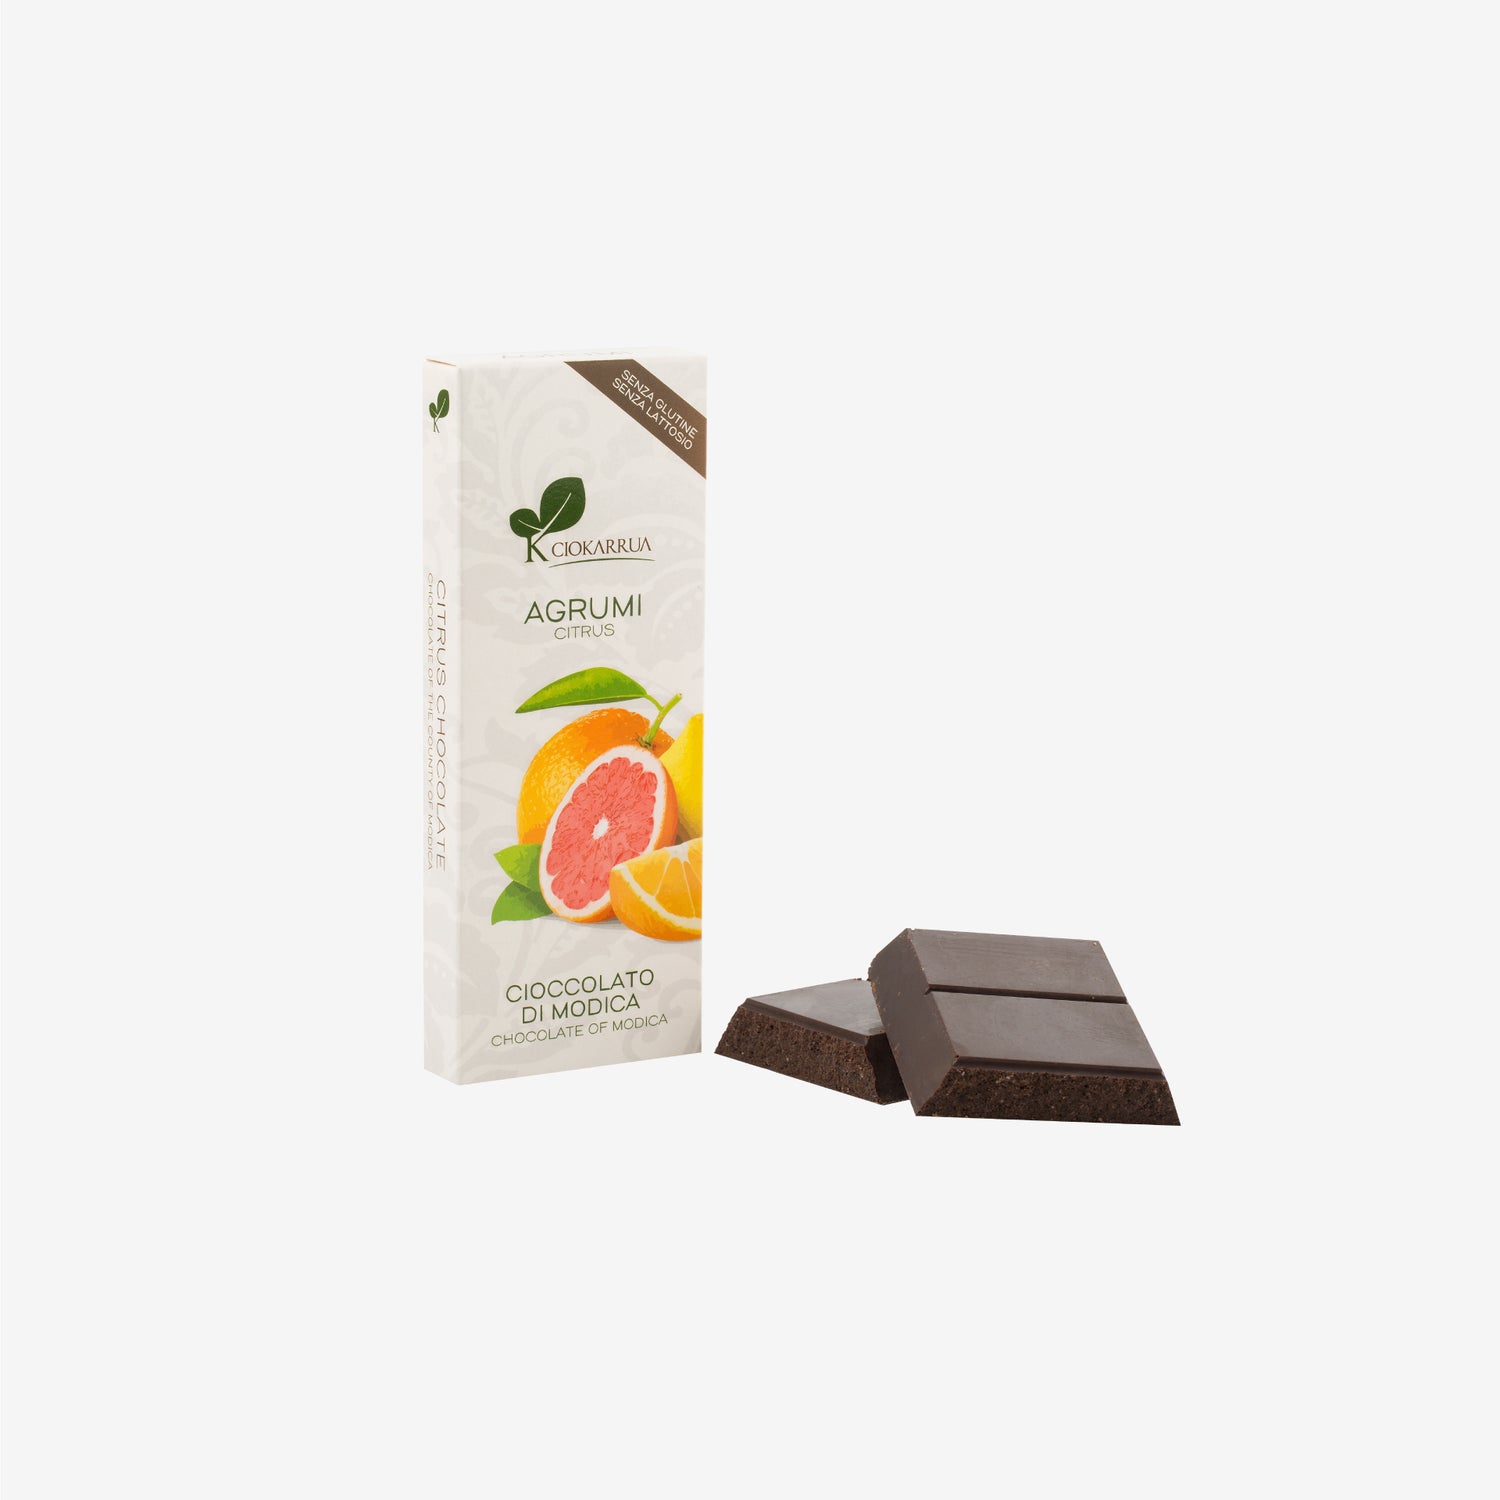 Cioccolato di Modica Agrumi